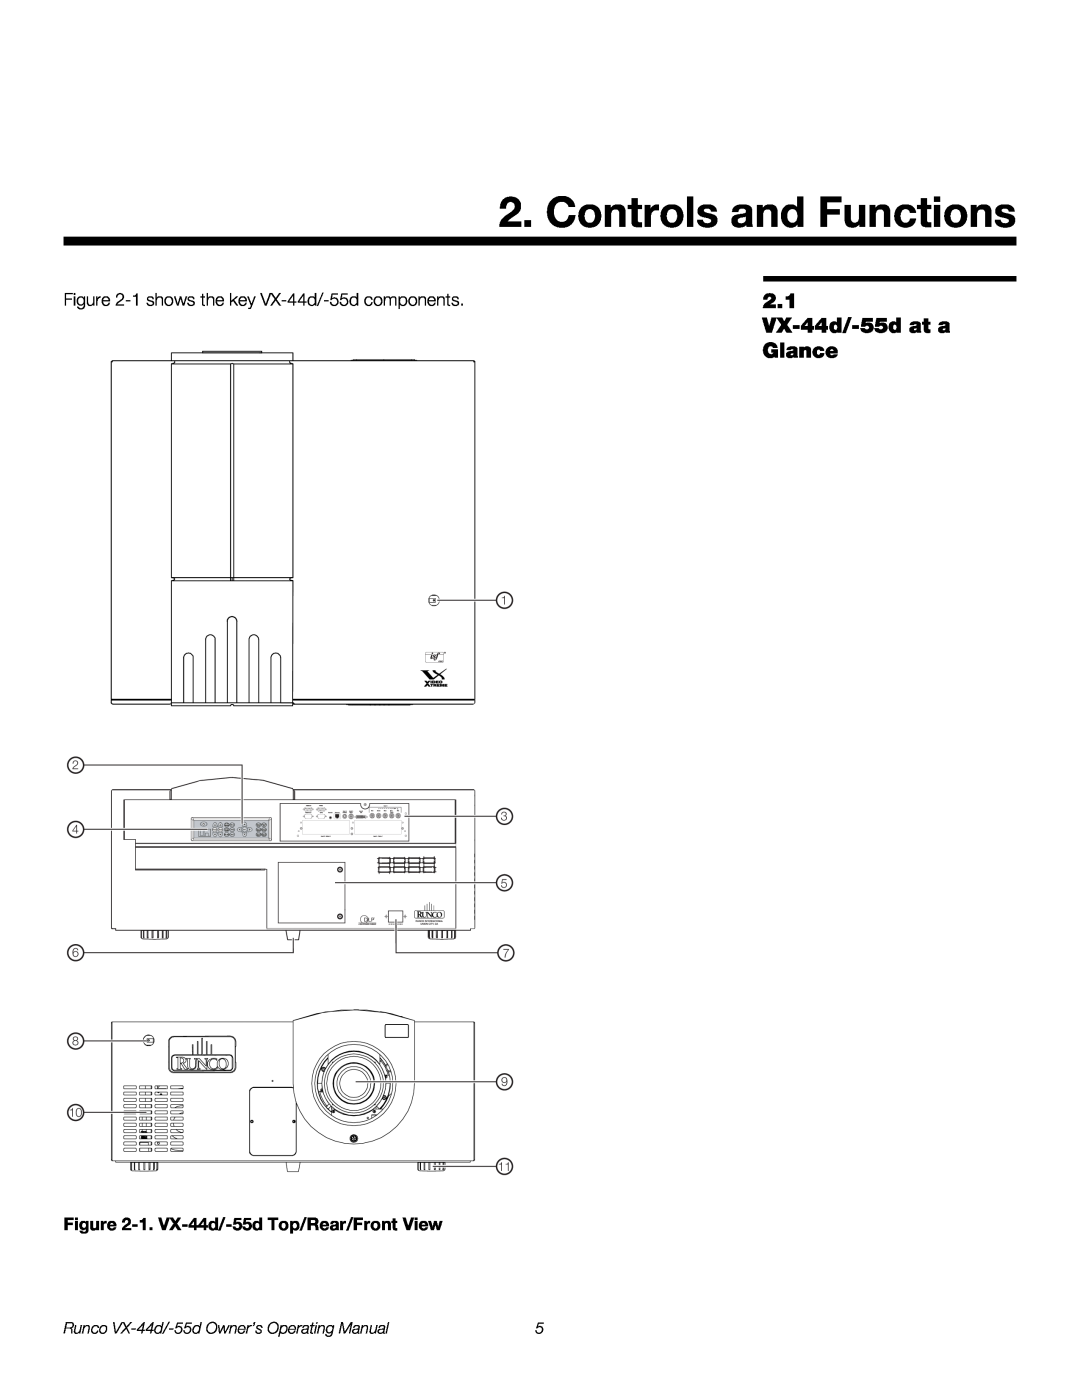 Runco VX-55D, VX-44D manual Controls and Functions, 2.1 VX-44d/-55d at a Glance, 1. VX-44d/-55d Top/Rear/Front View 